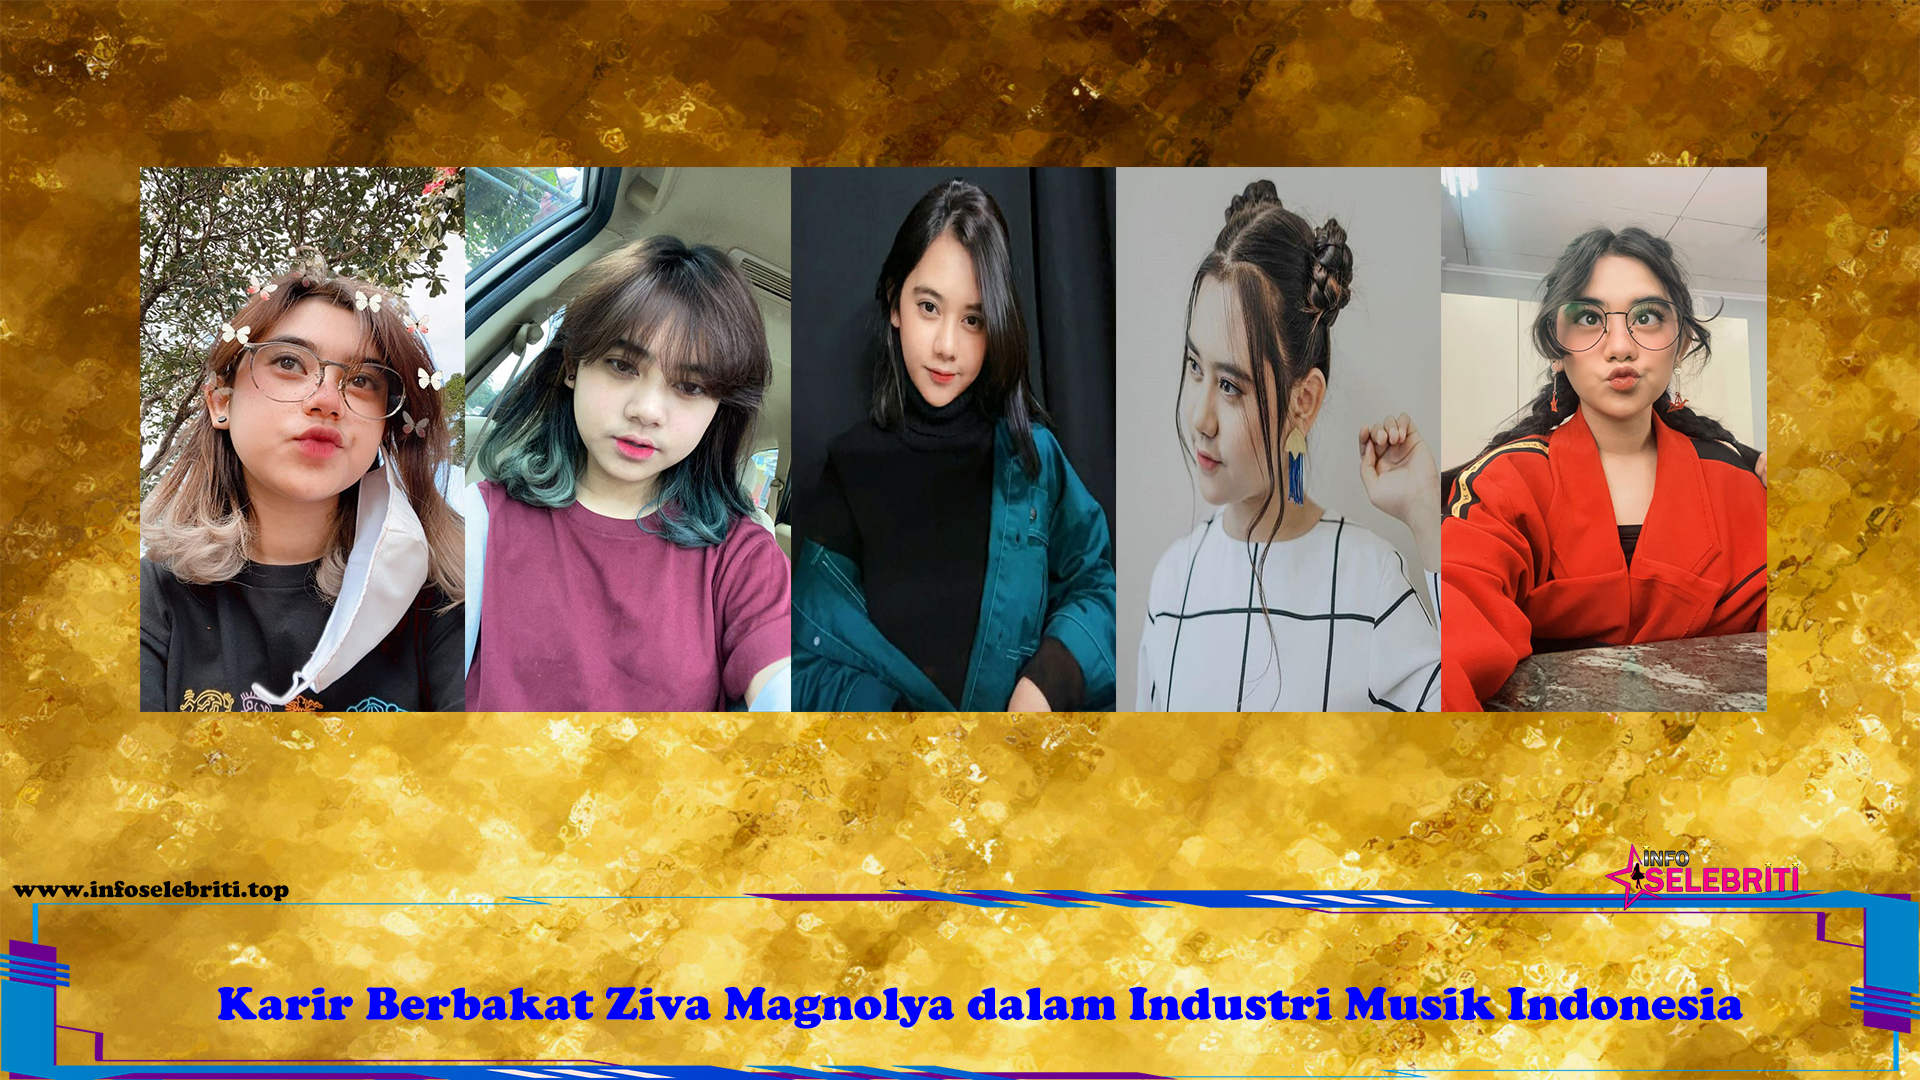 Karir Berbakat Ziva Magnolya dalam Industri Musik Indonesia